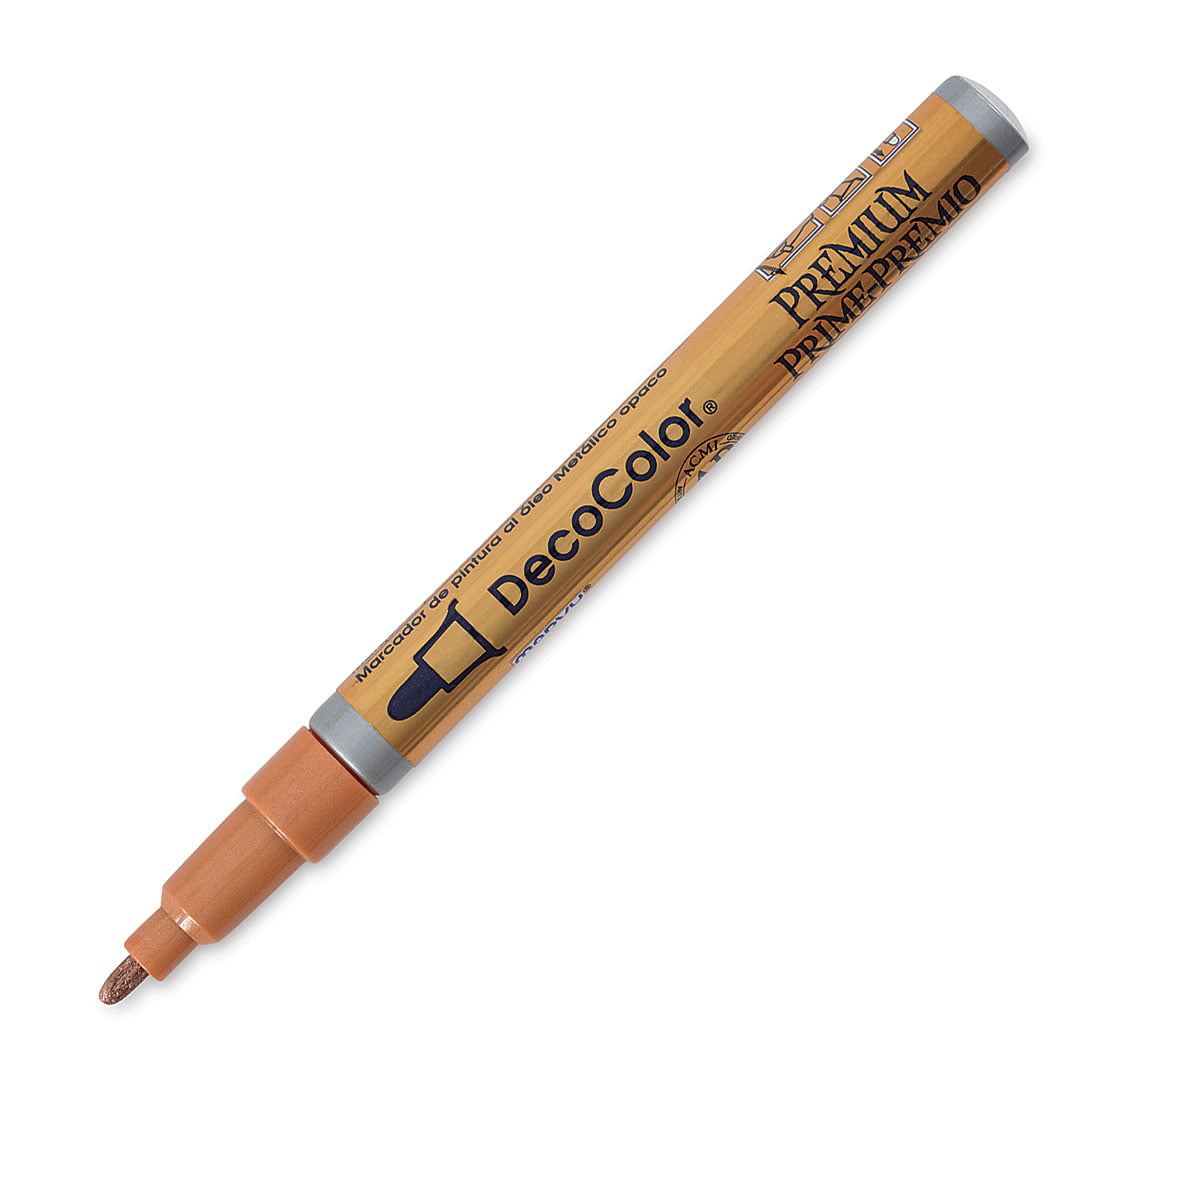 DecoColor Premium 2mm Paint Marker Copper 028617250847 for sale online 